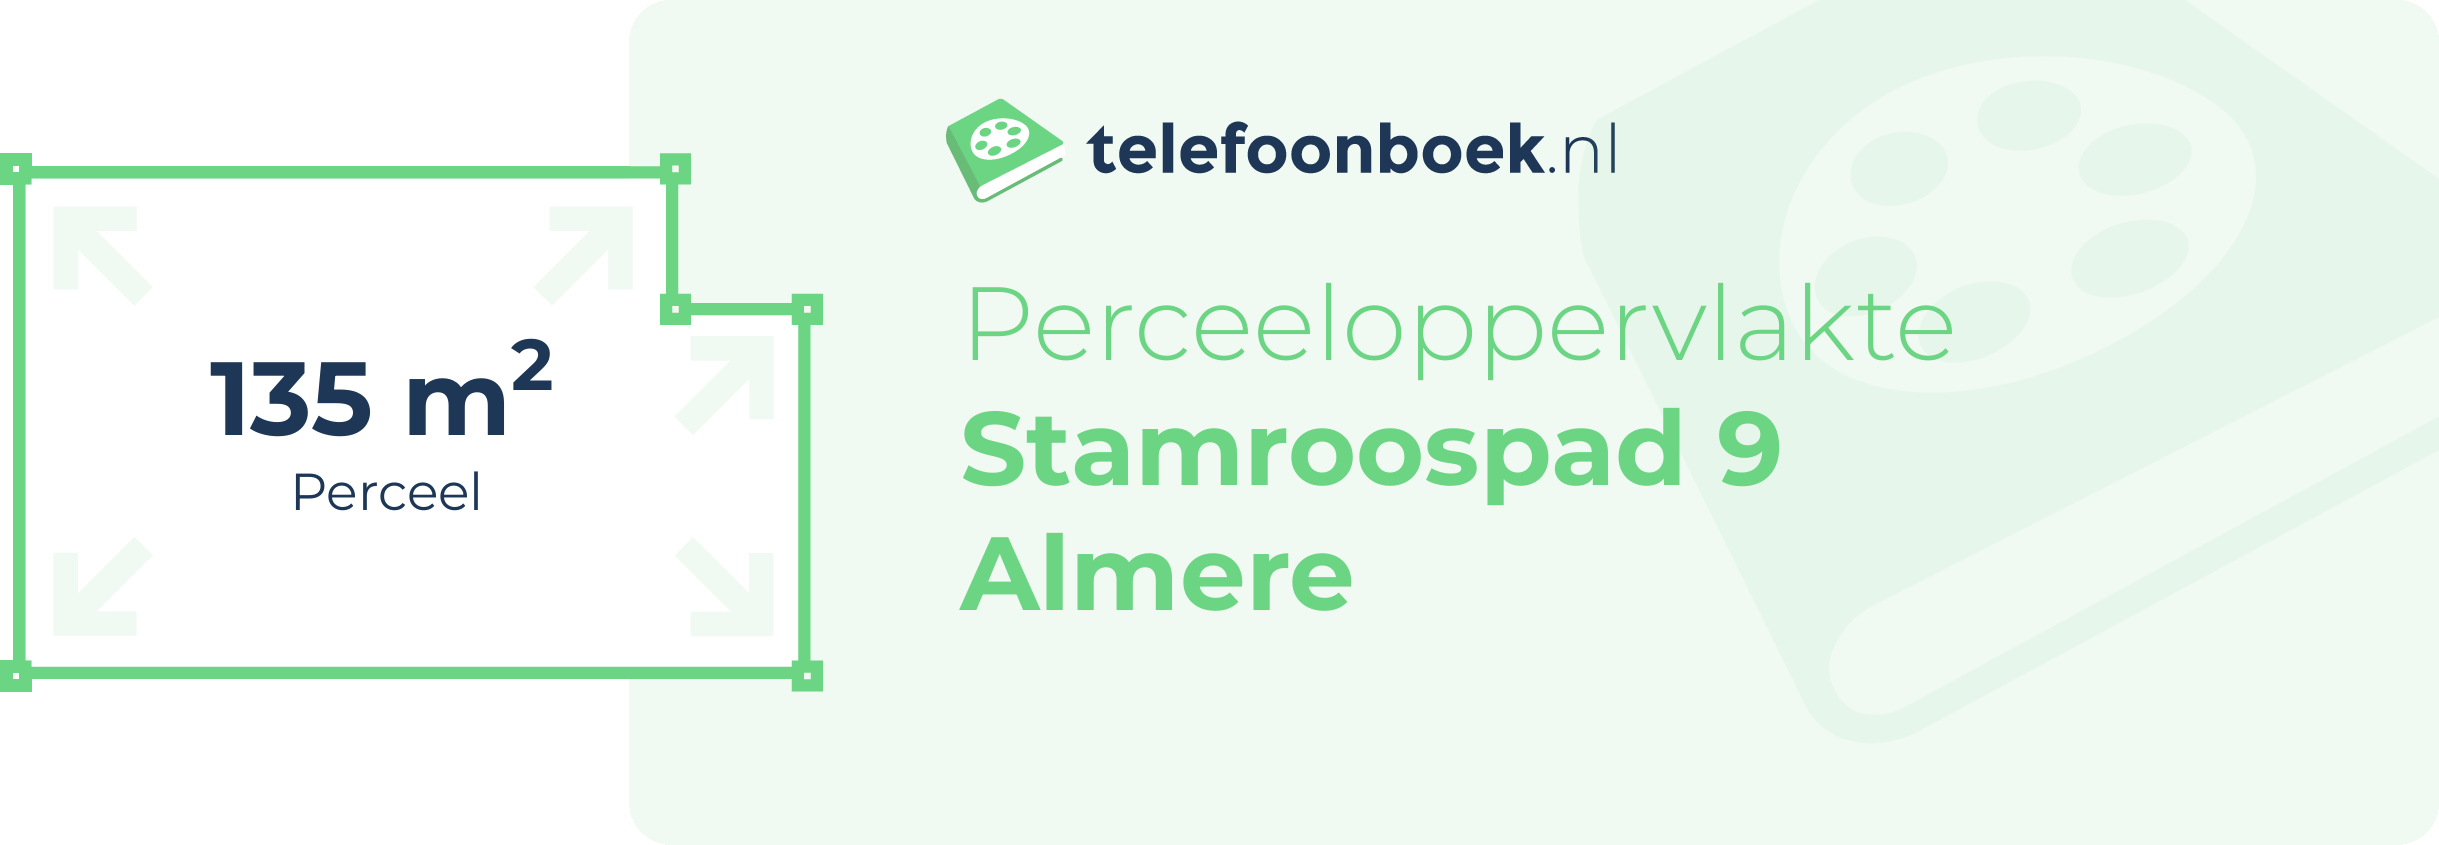 Perceeloppervlakte Stamroospad 9 Almere